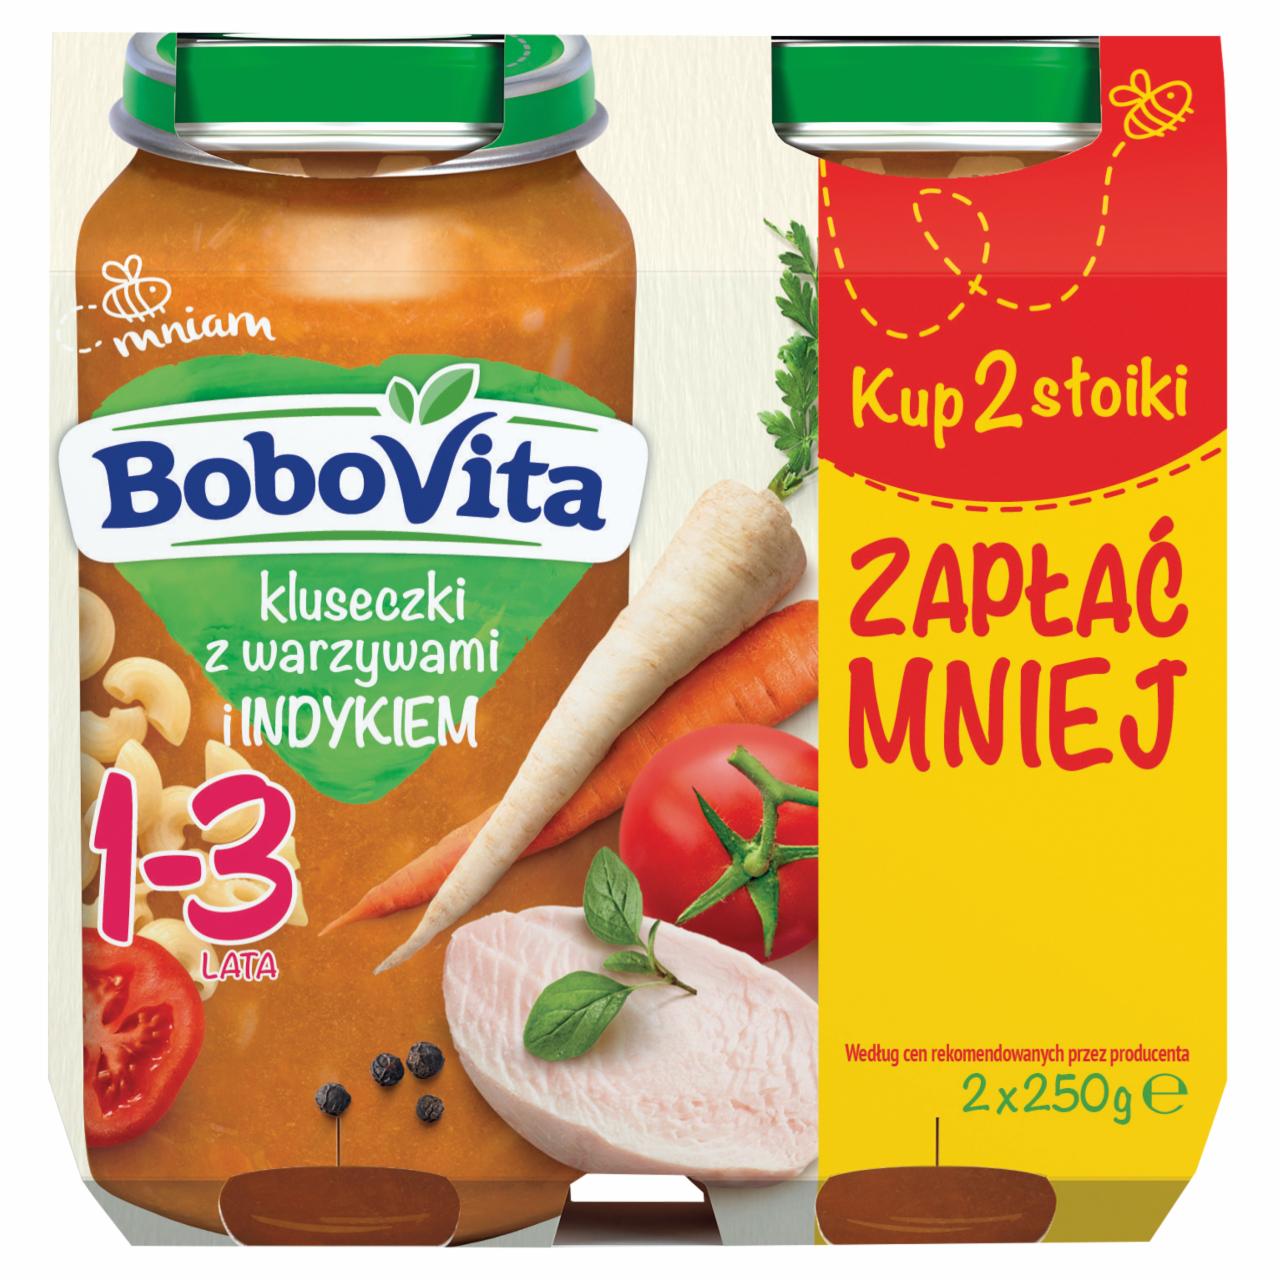 Zdjęcia - BoboVita Kluseczki z warzywami i indykiem 1-3 lata 2 x 250 g